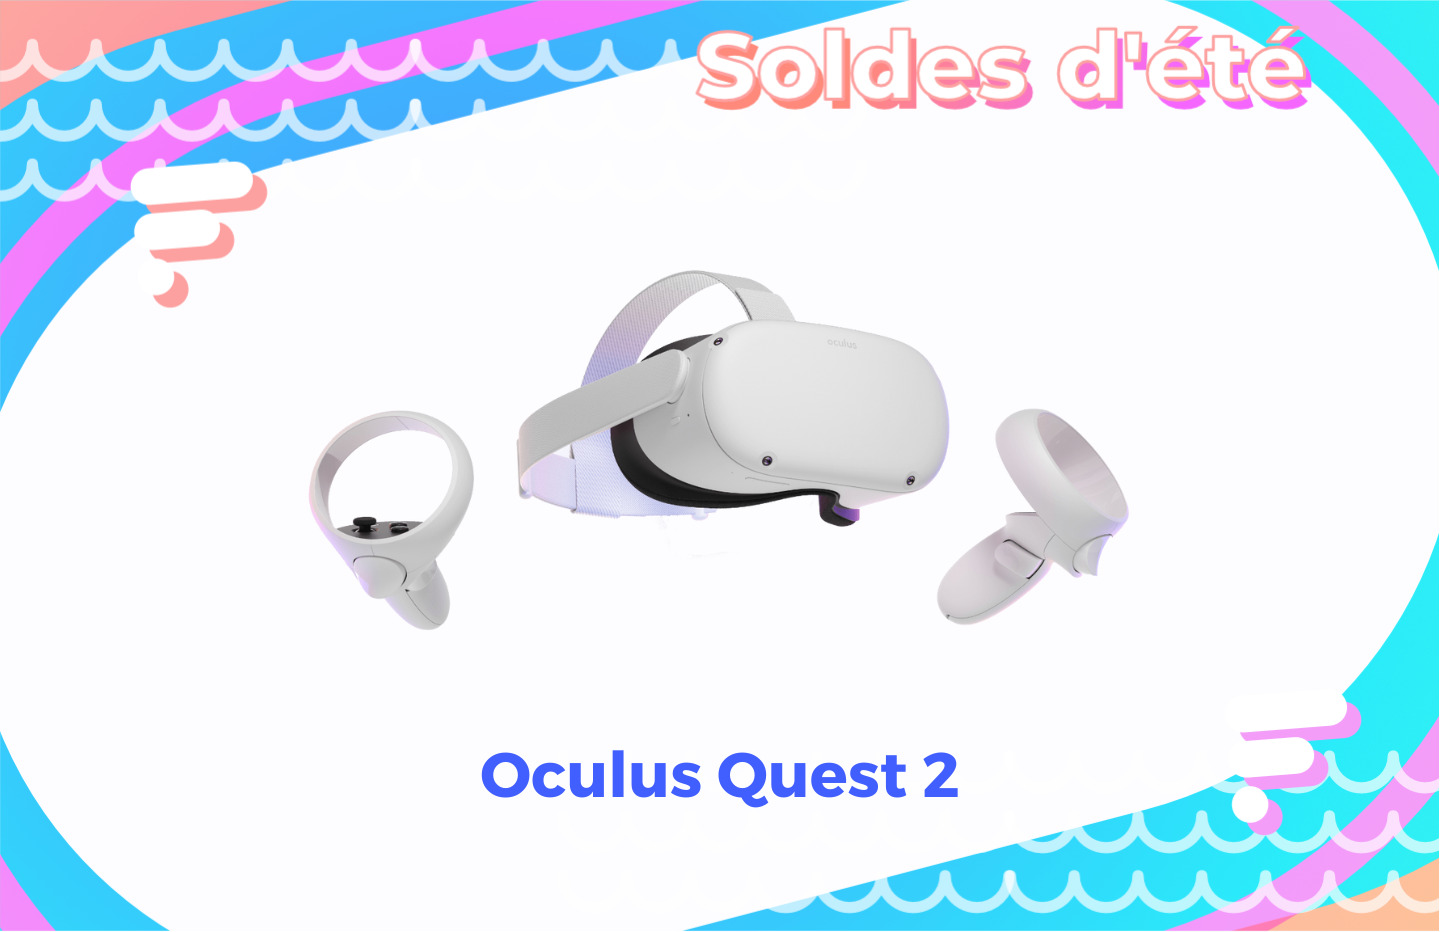 Le casque VR qui s'appelait Oculus Quest 2 est en promotion pour les soldes